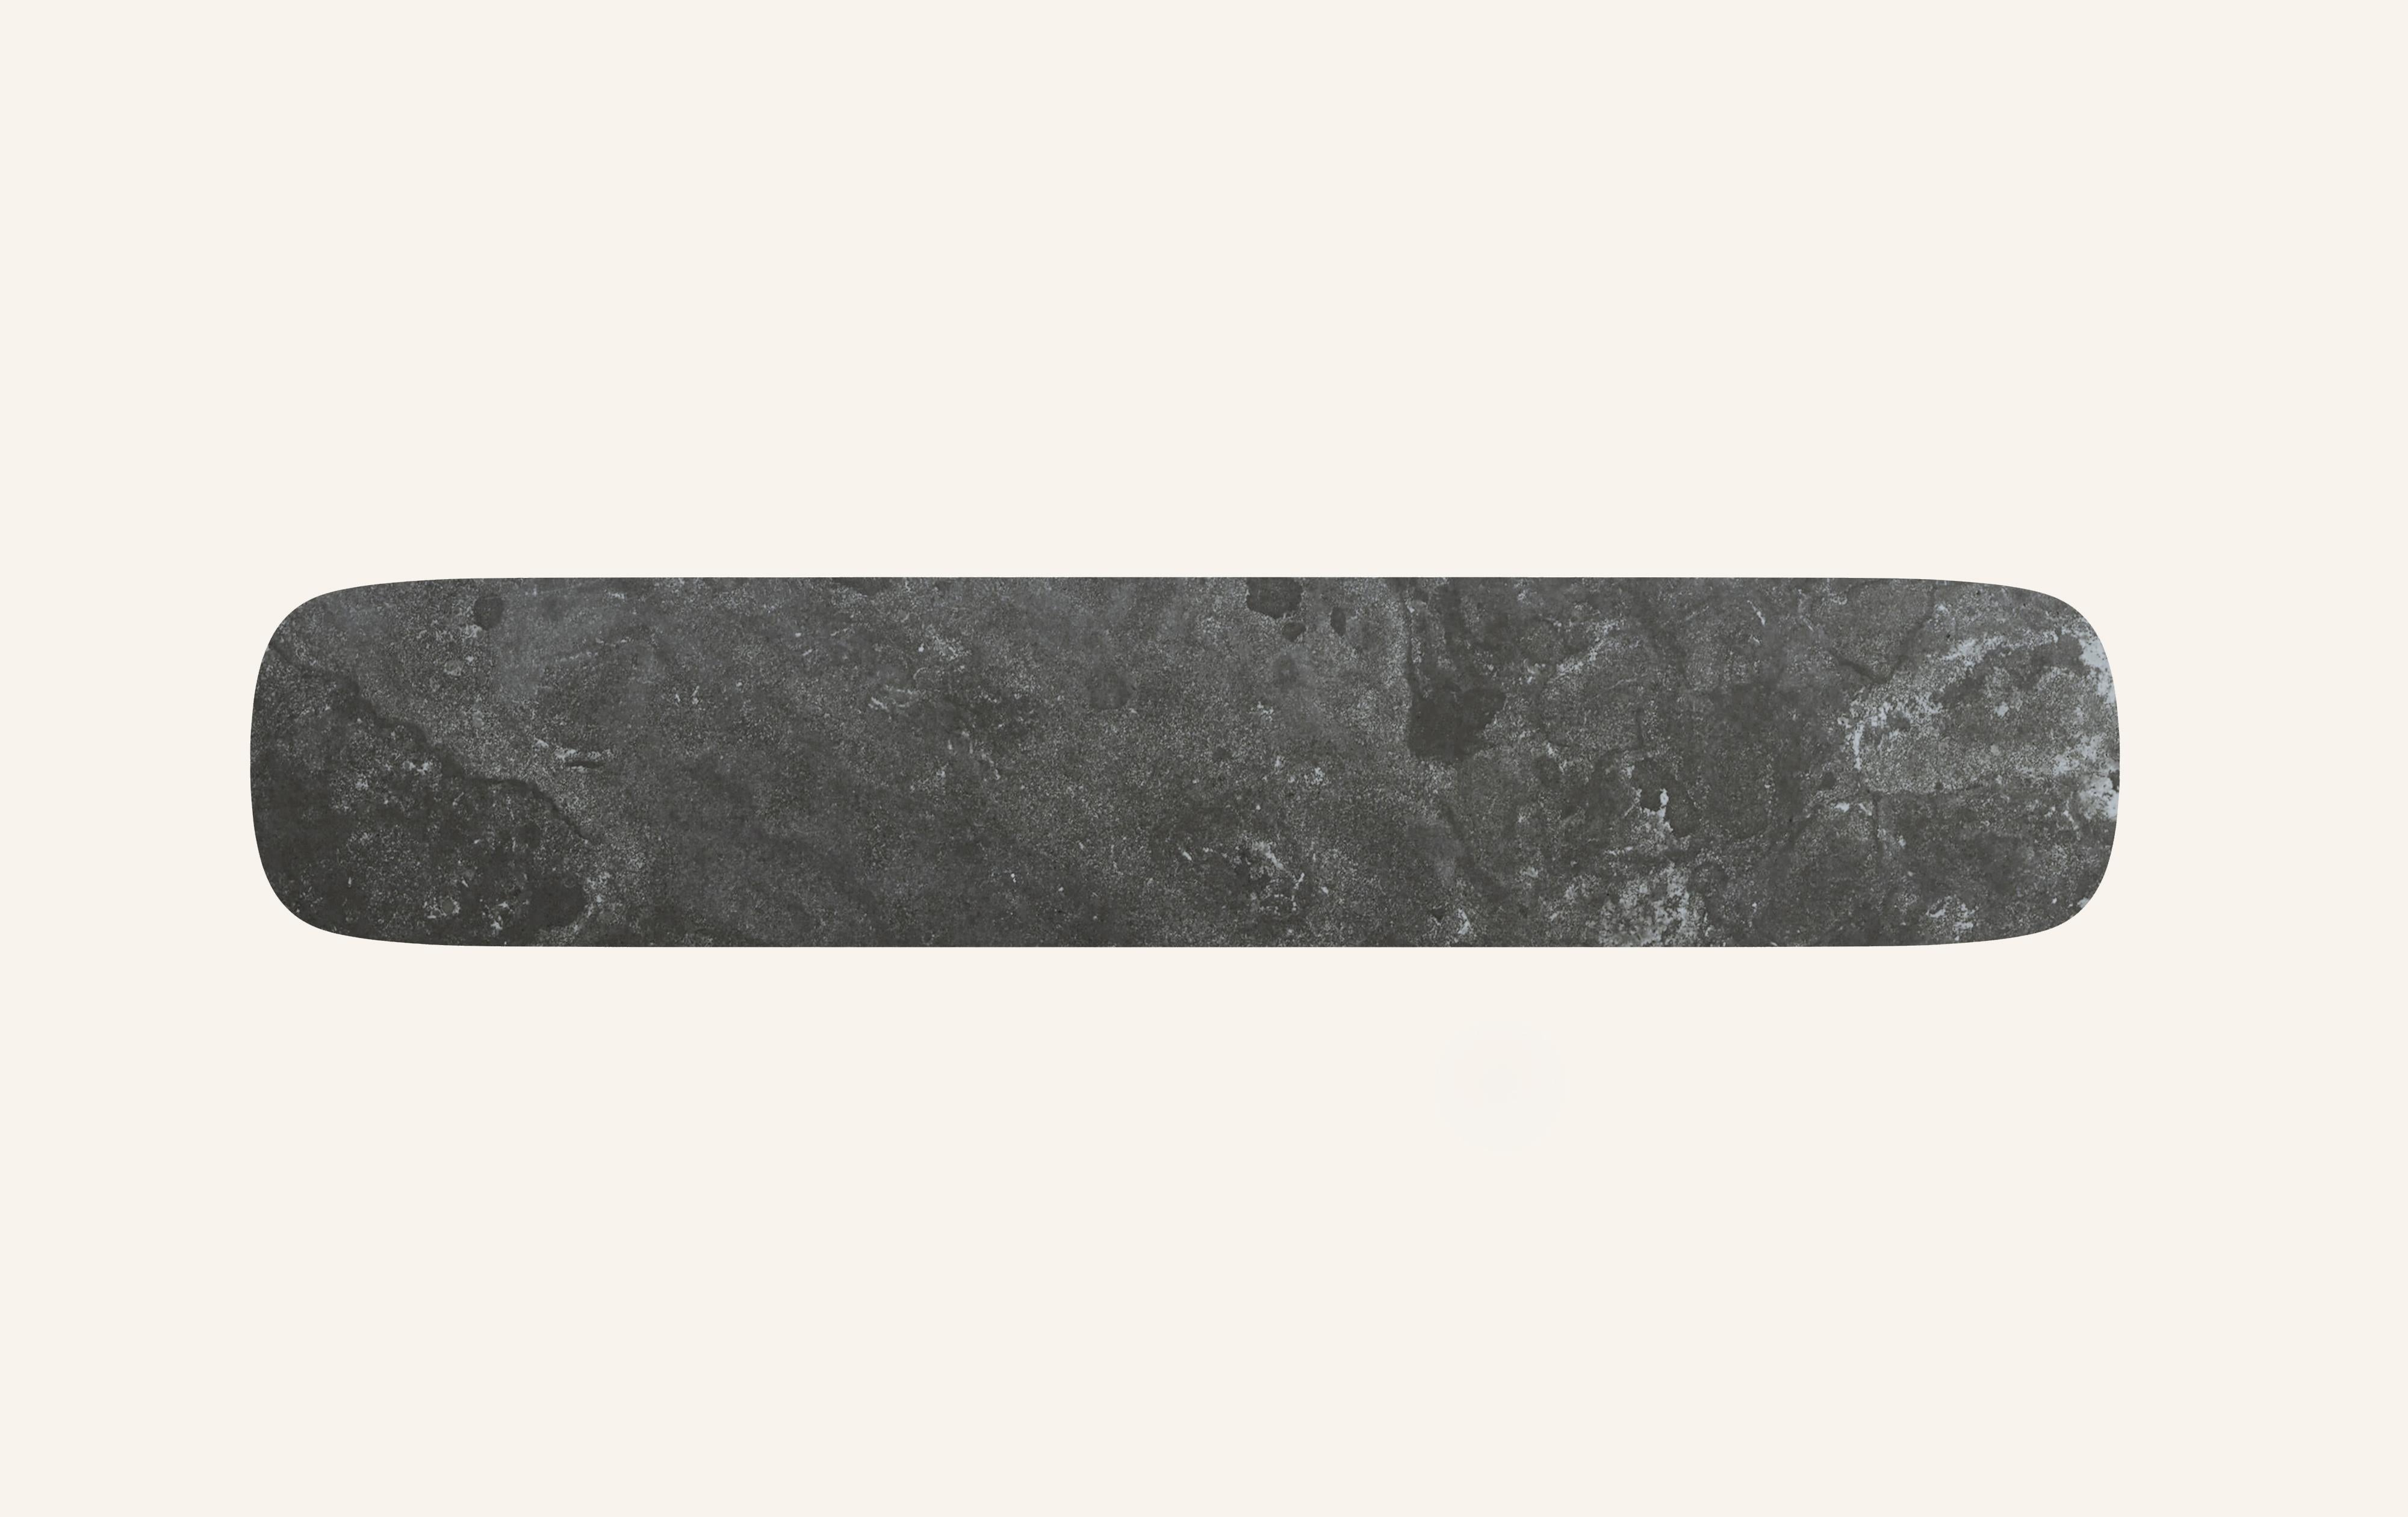 FORM(LA) Cono Console Table 60”L x 15”W x 33”H Nero Petite Granite In New Condition For Sale In Los Angeles, CA